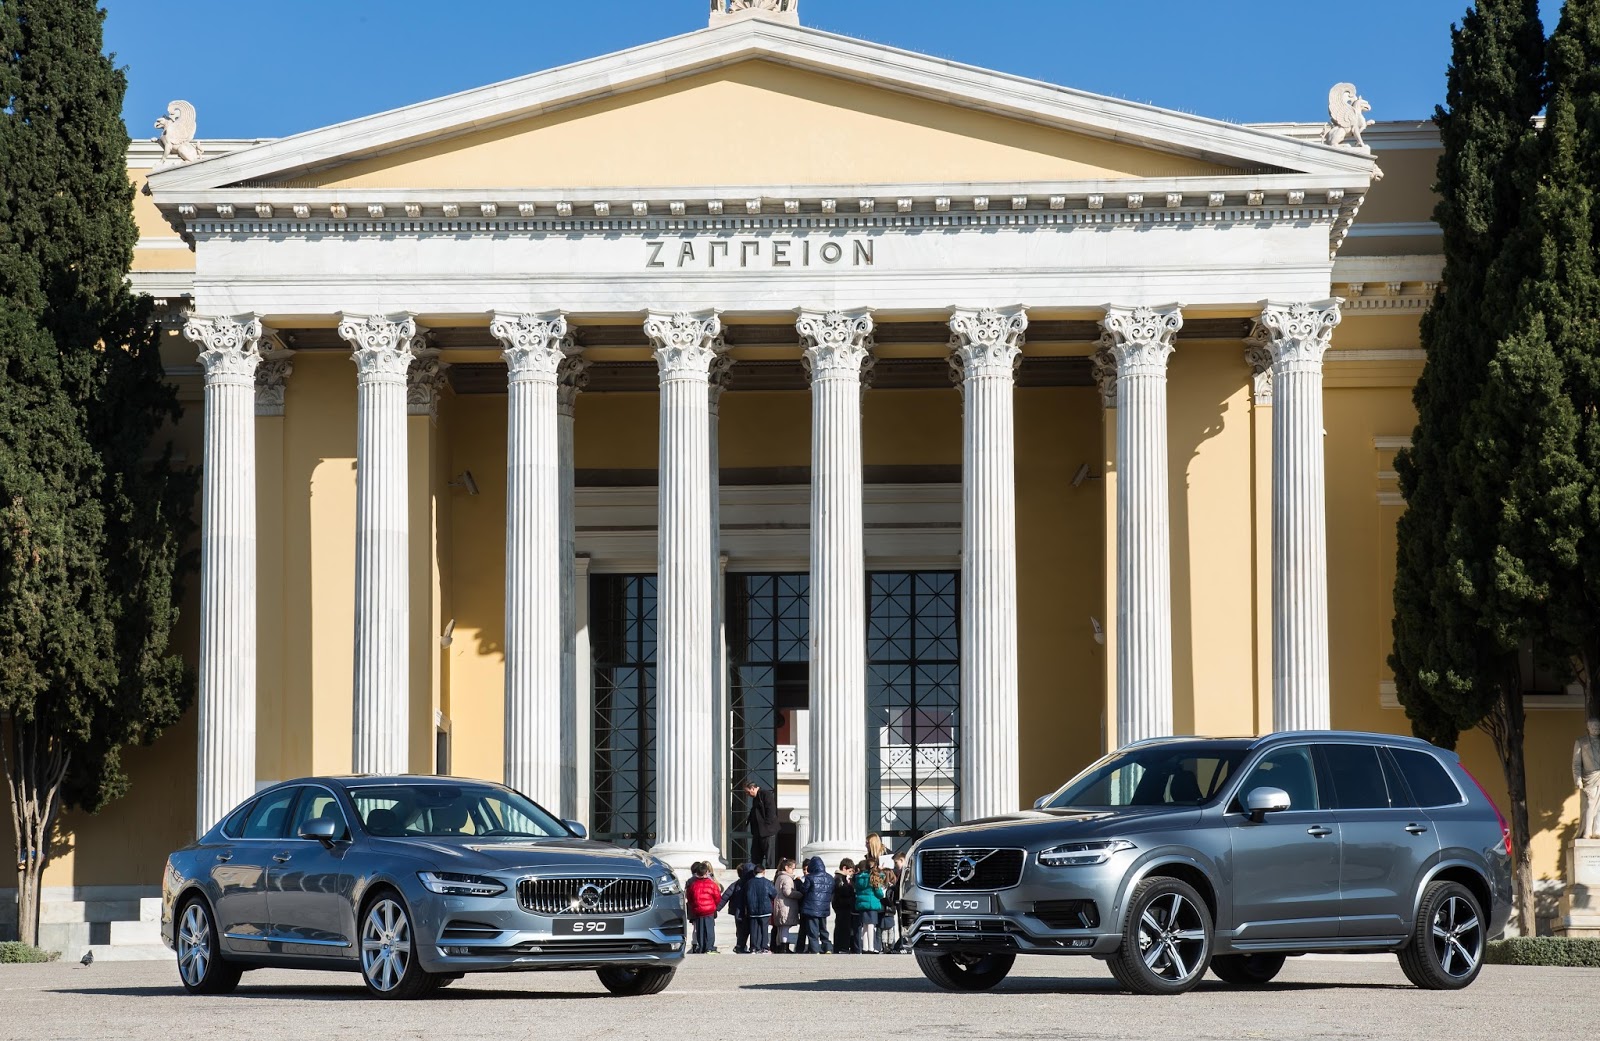 VOLVO2BKAI2BIOA25CE25A32B25CE25A325CE25A425CE259F2B25CE259625CE259125CE25A025CE25A025CE259525CE259925CE259F 1 Εβδομάδα κυκλοφοριακής αγωγής στο Ζάππειο με συμμετοχή της Volvo